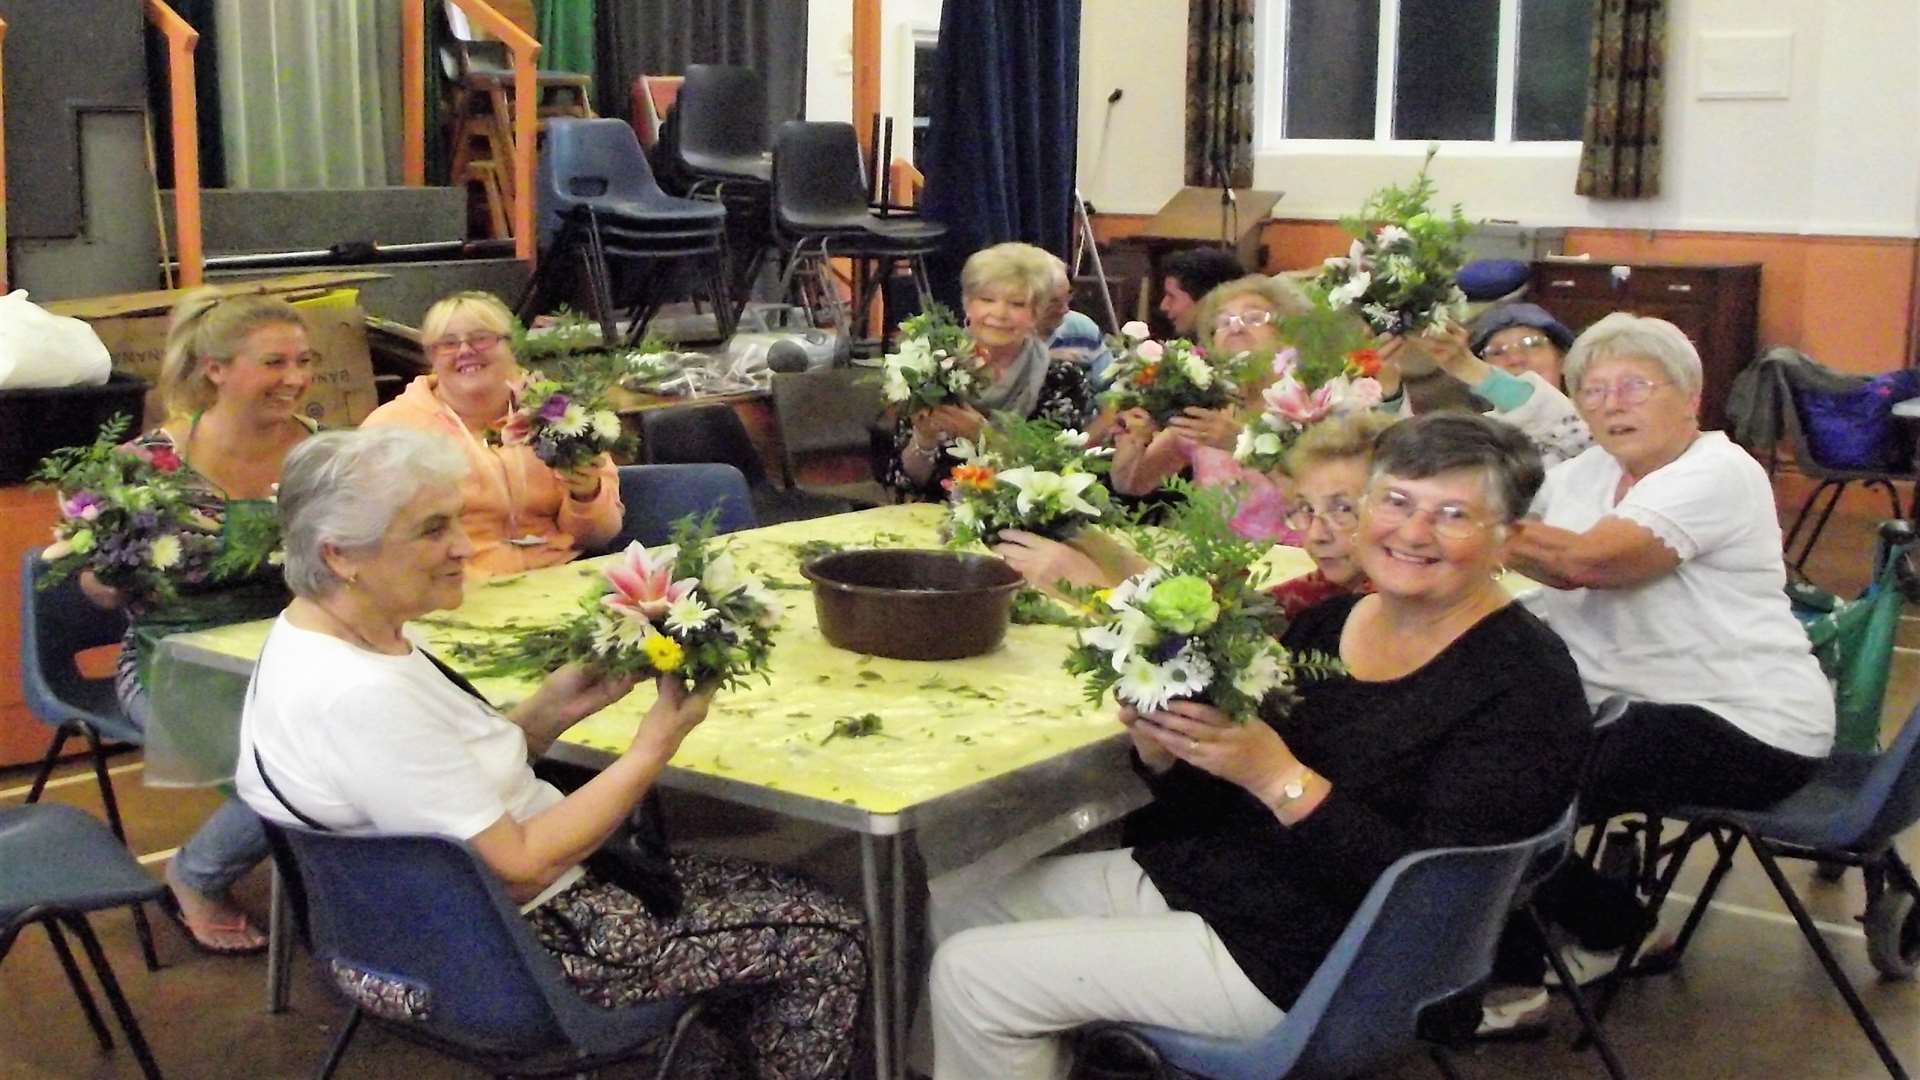 Flower arranging workshop at Your Time.